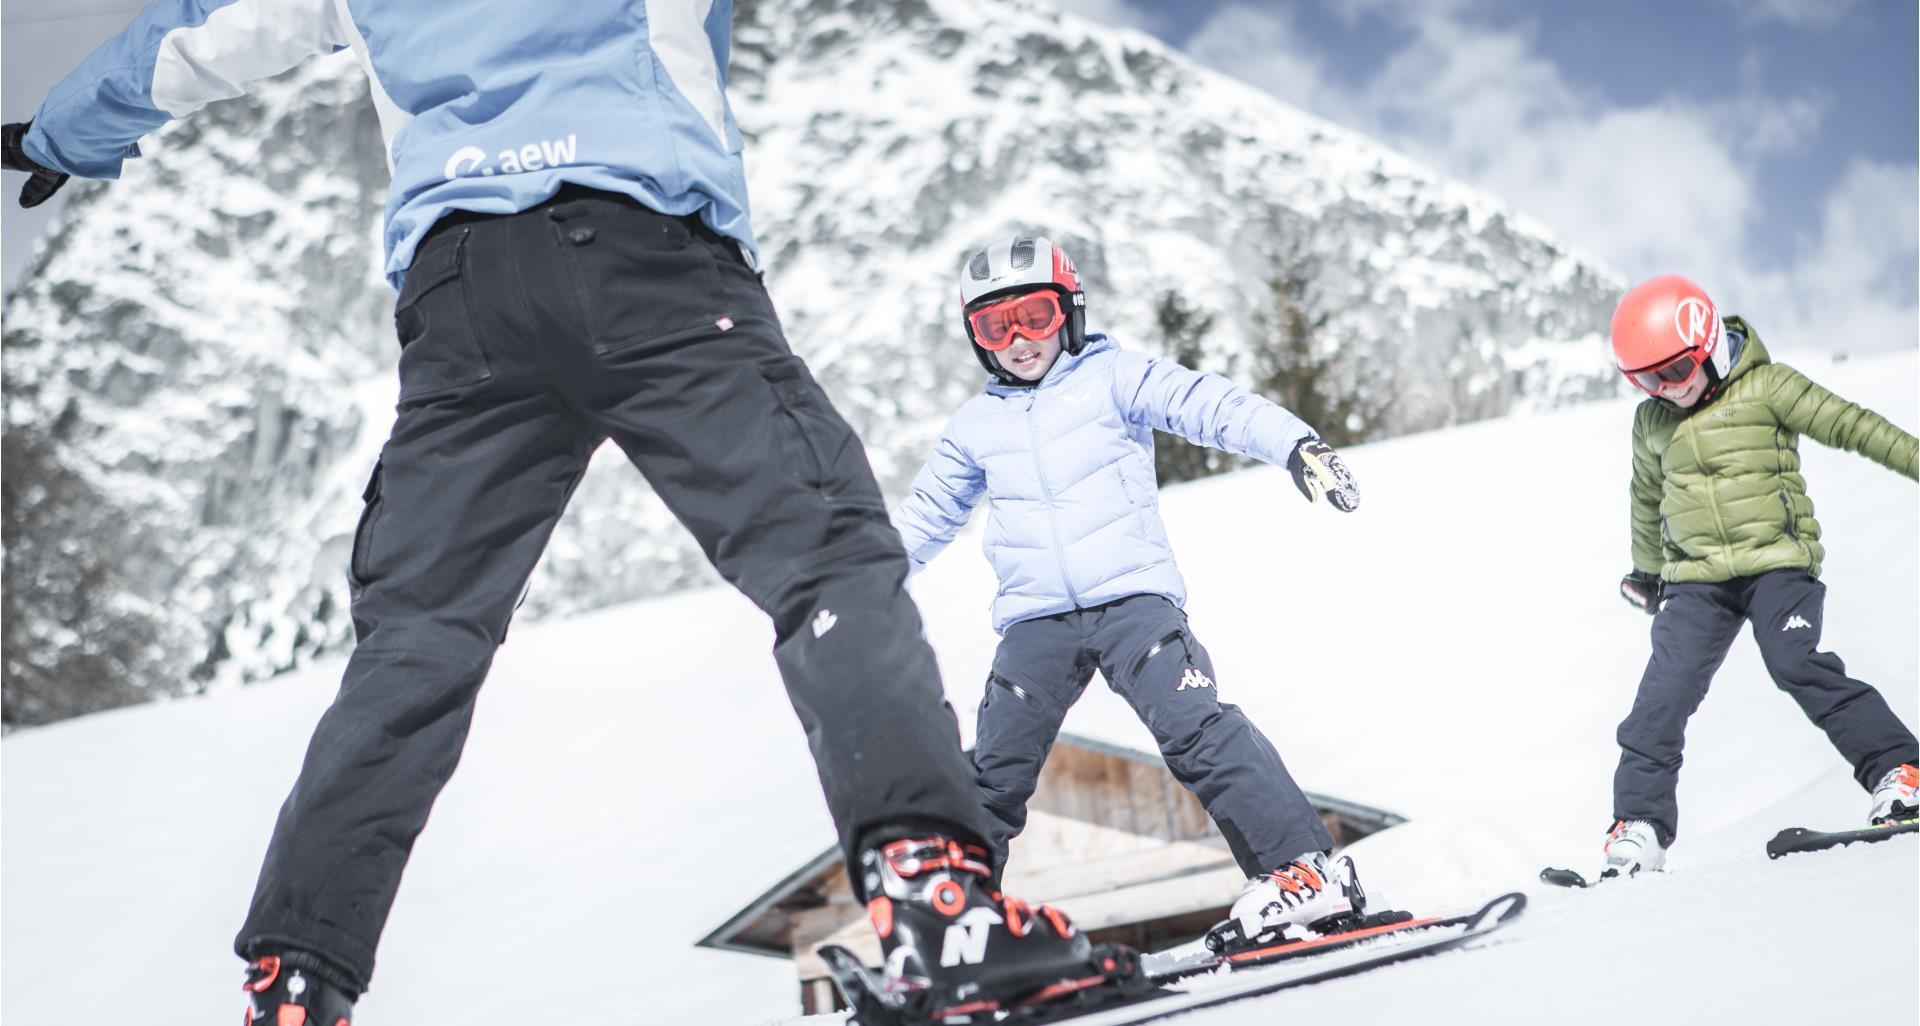 Sciare-Scuola-di-ski-bambini-Avelengo-Verano-Merano2000-mk